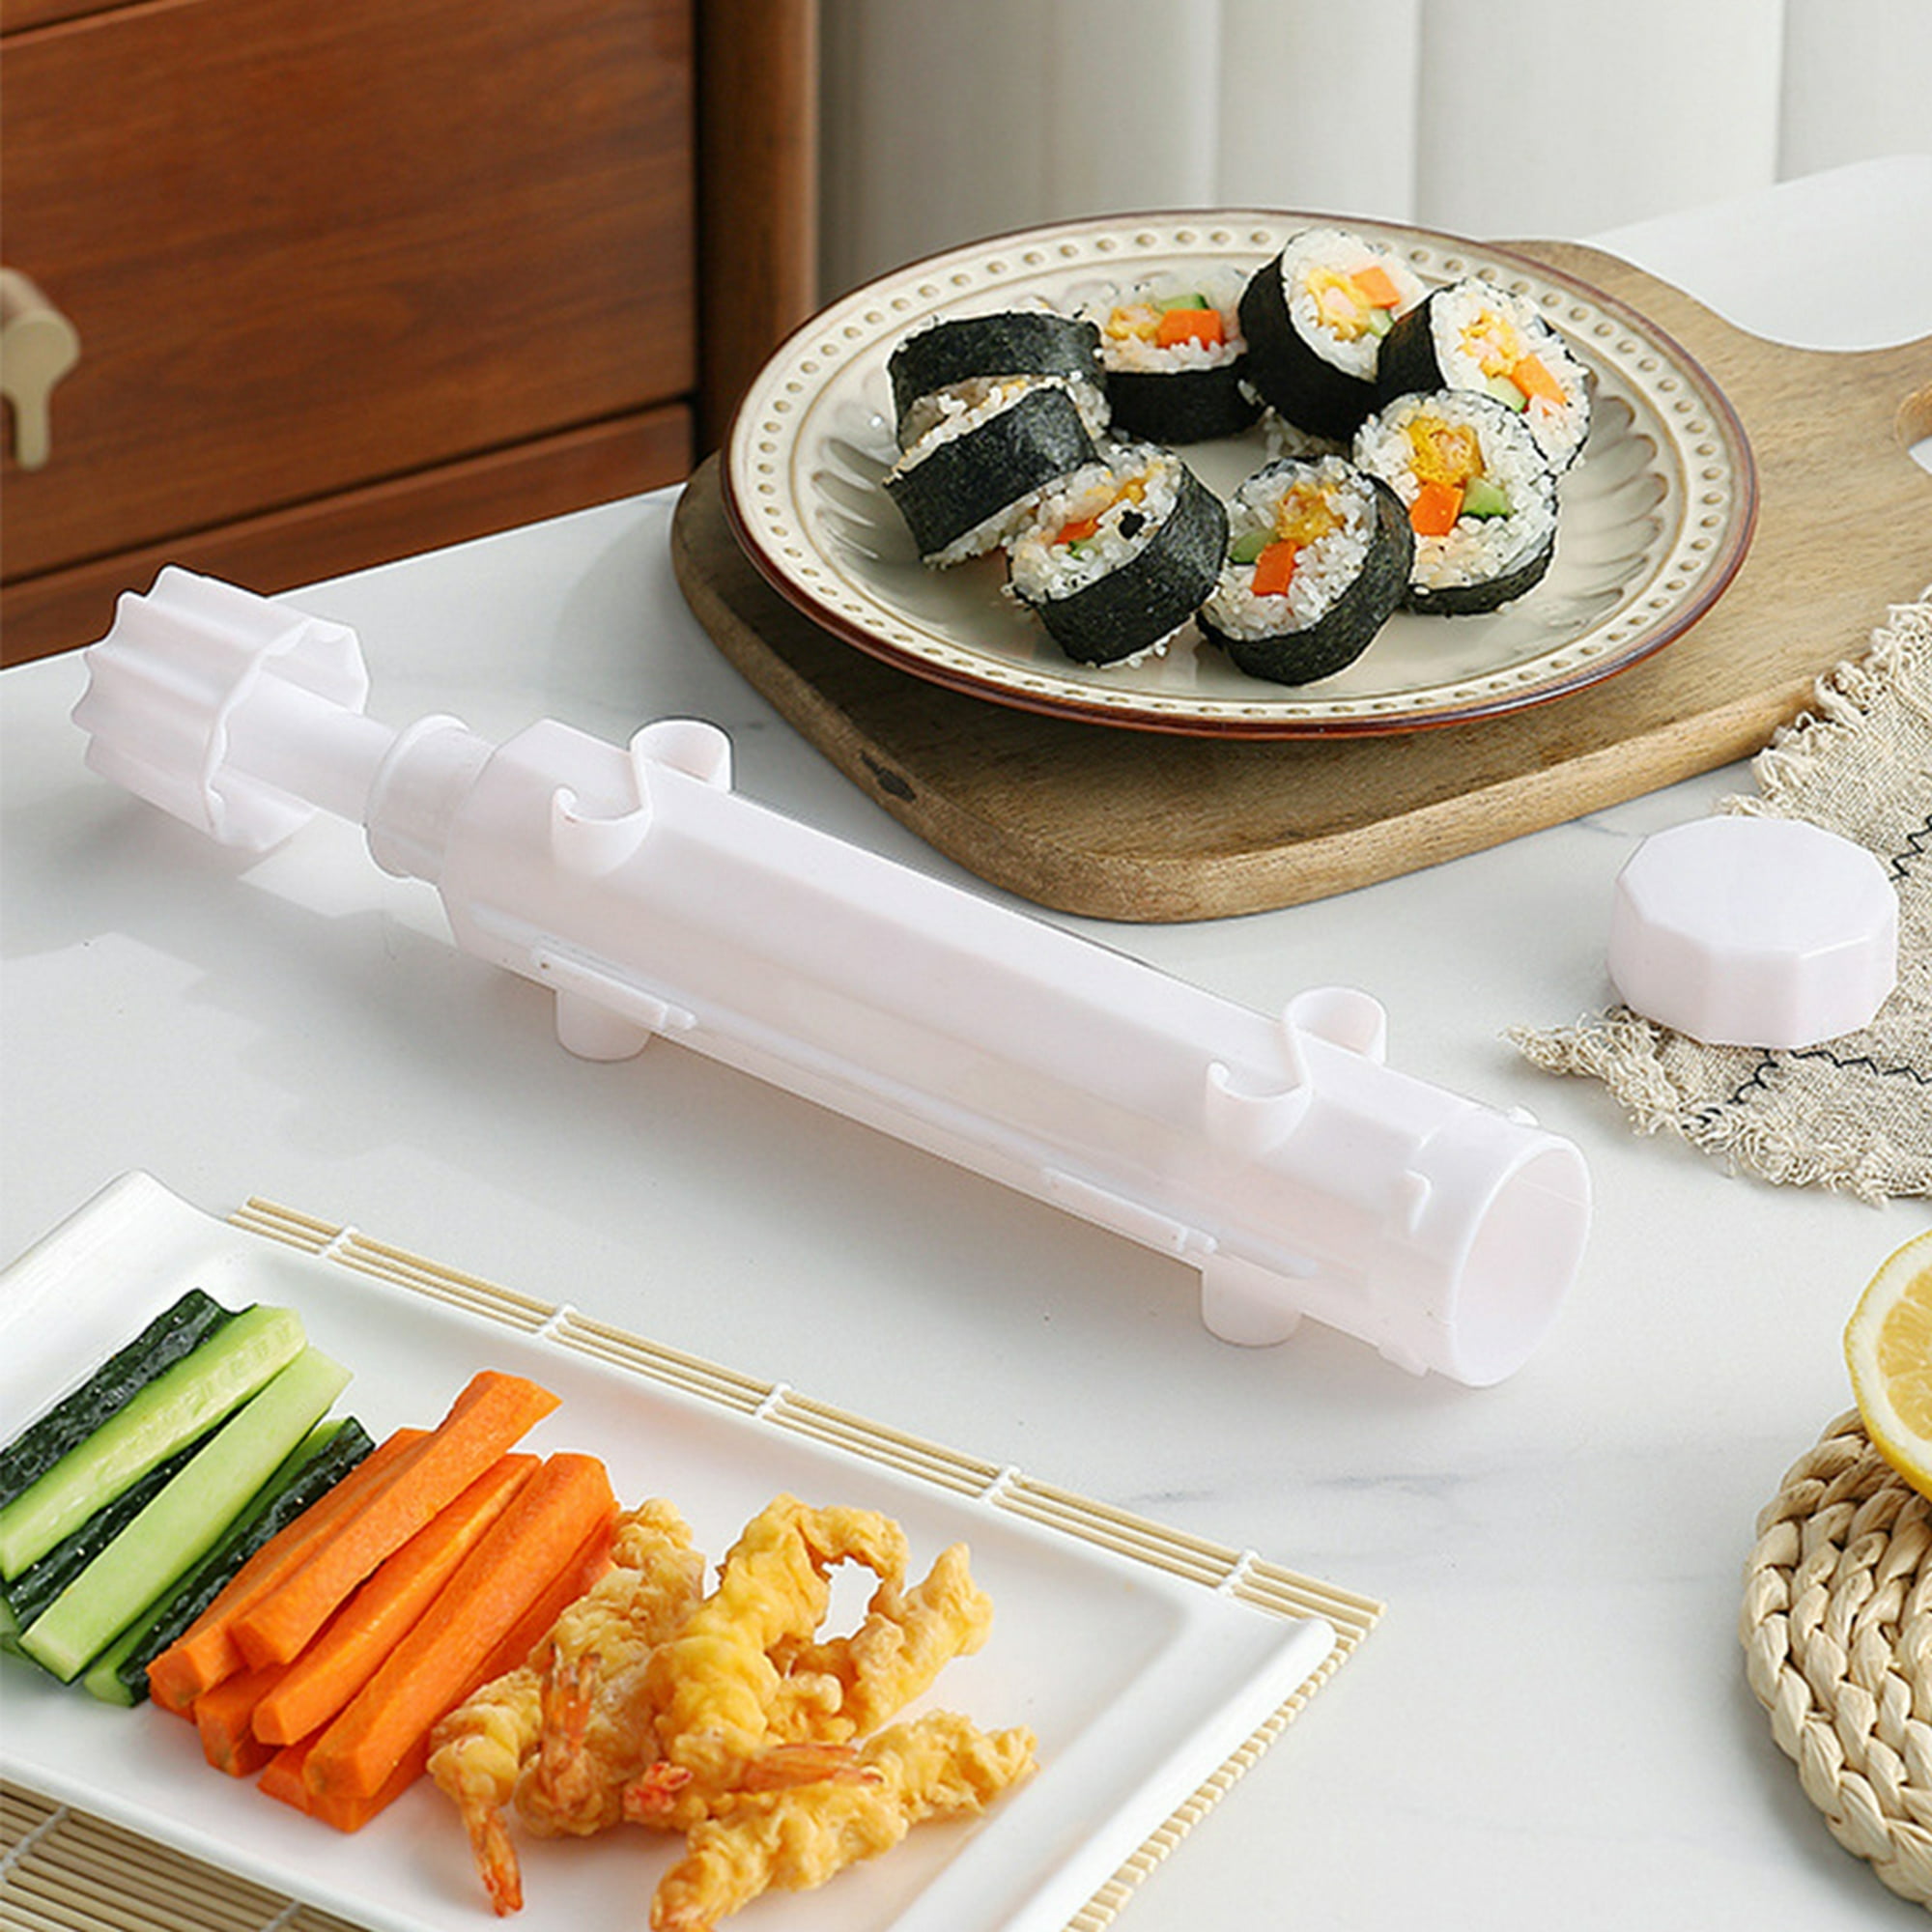  Kit de fabricación de sushi: el kit de fabricación de sushi de  chef de confianza para principiantes viene con instrucciones paso a paso,  videos y recetas para comenzar. Kit de sushi